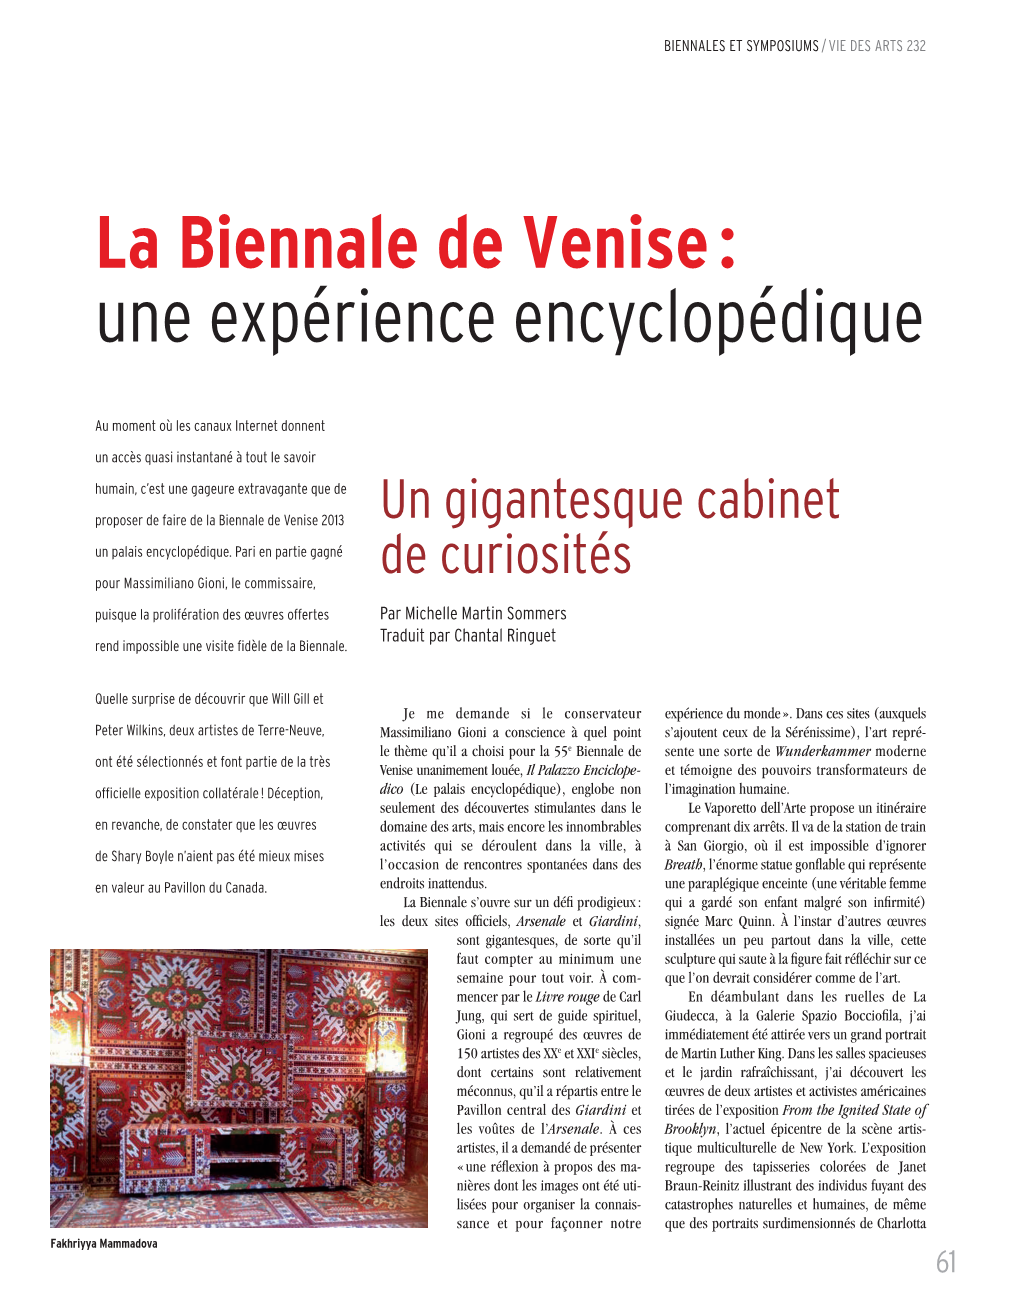 La Biennale De Venise : Une Expérience Encyclopédique